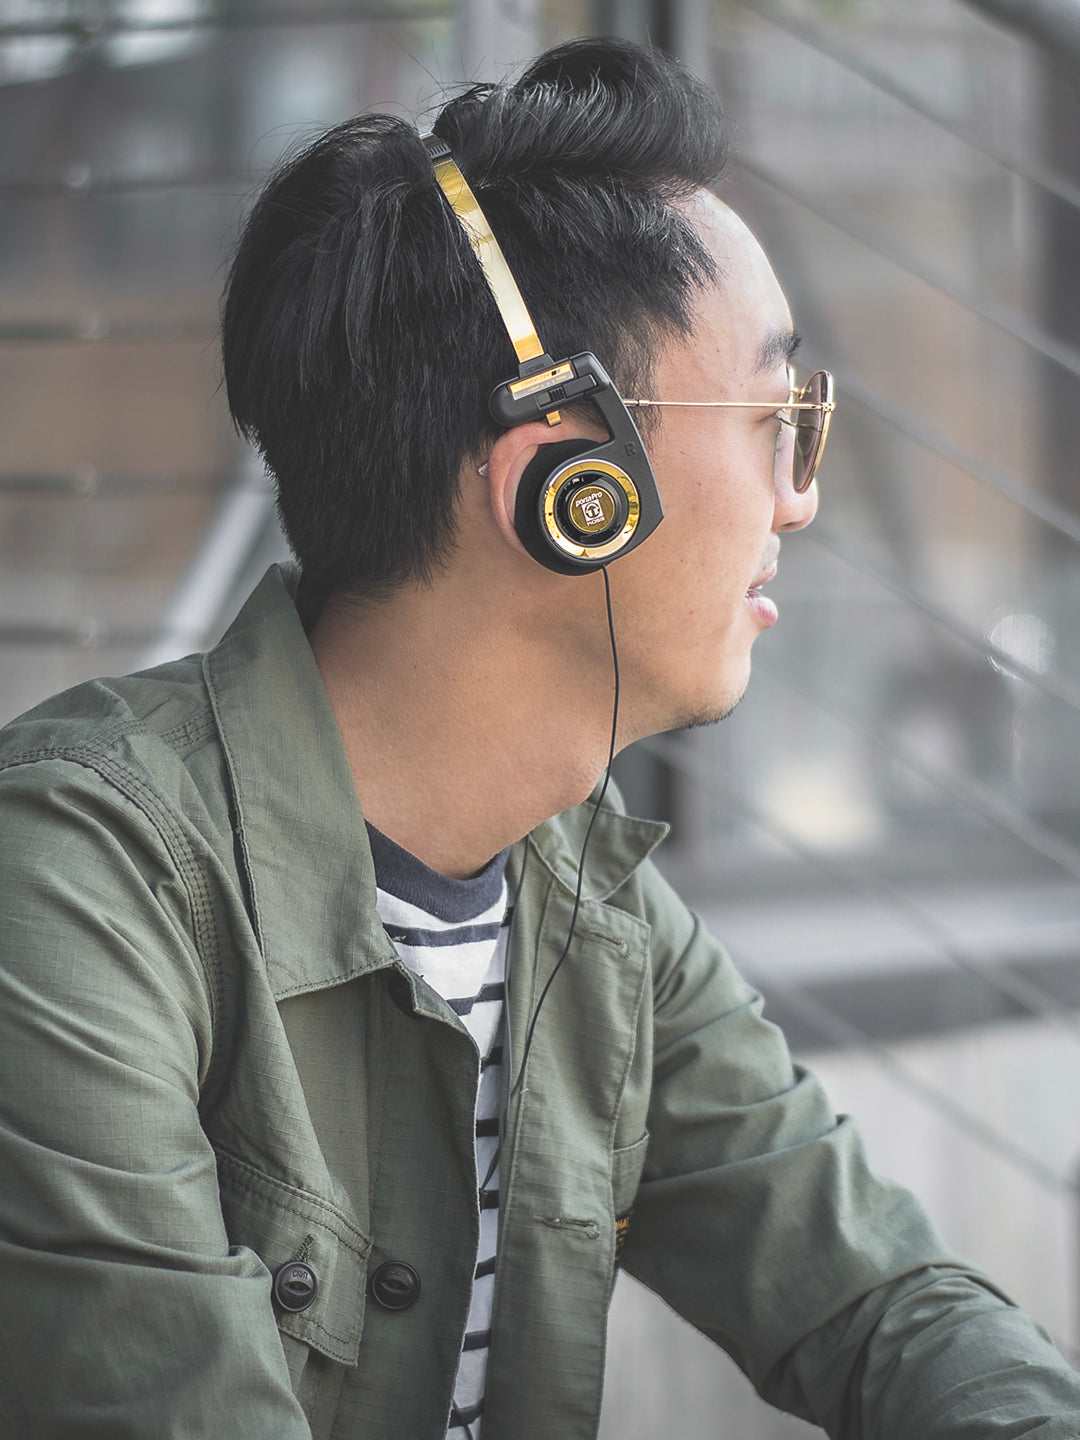 Koss Porta Pro On-Ear Headphones 